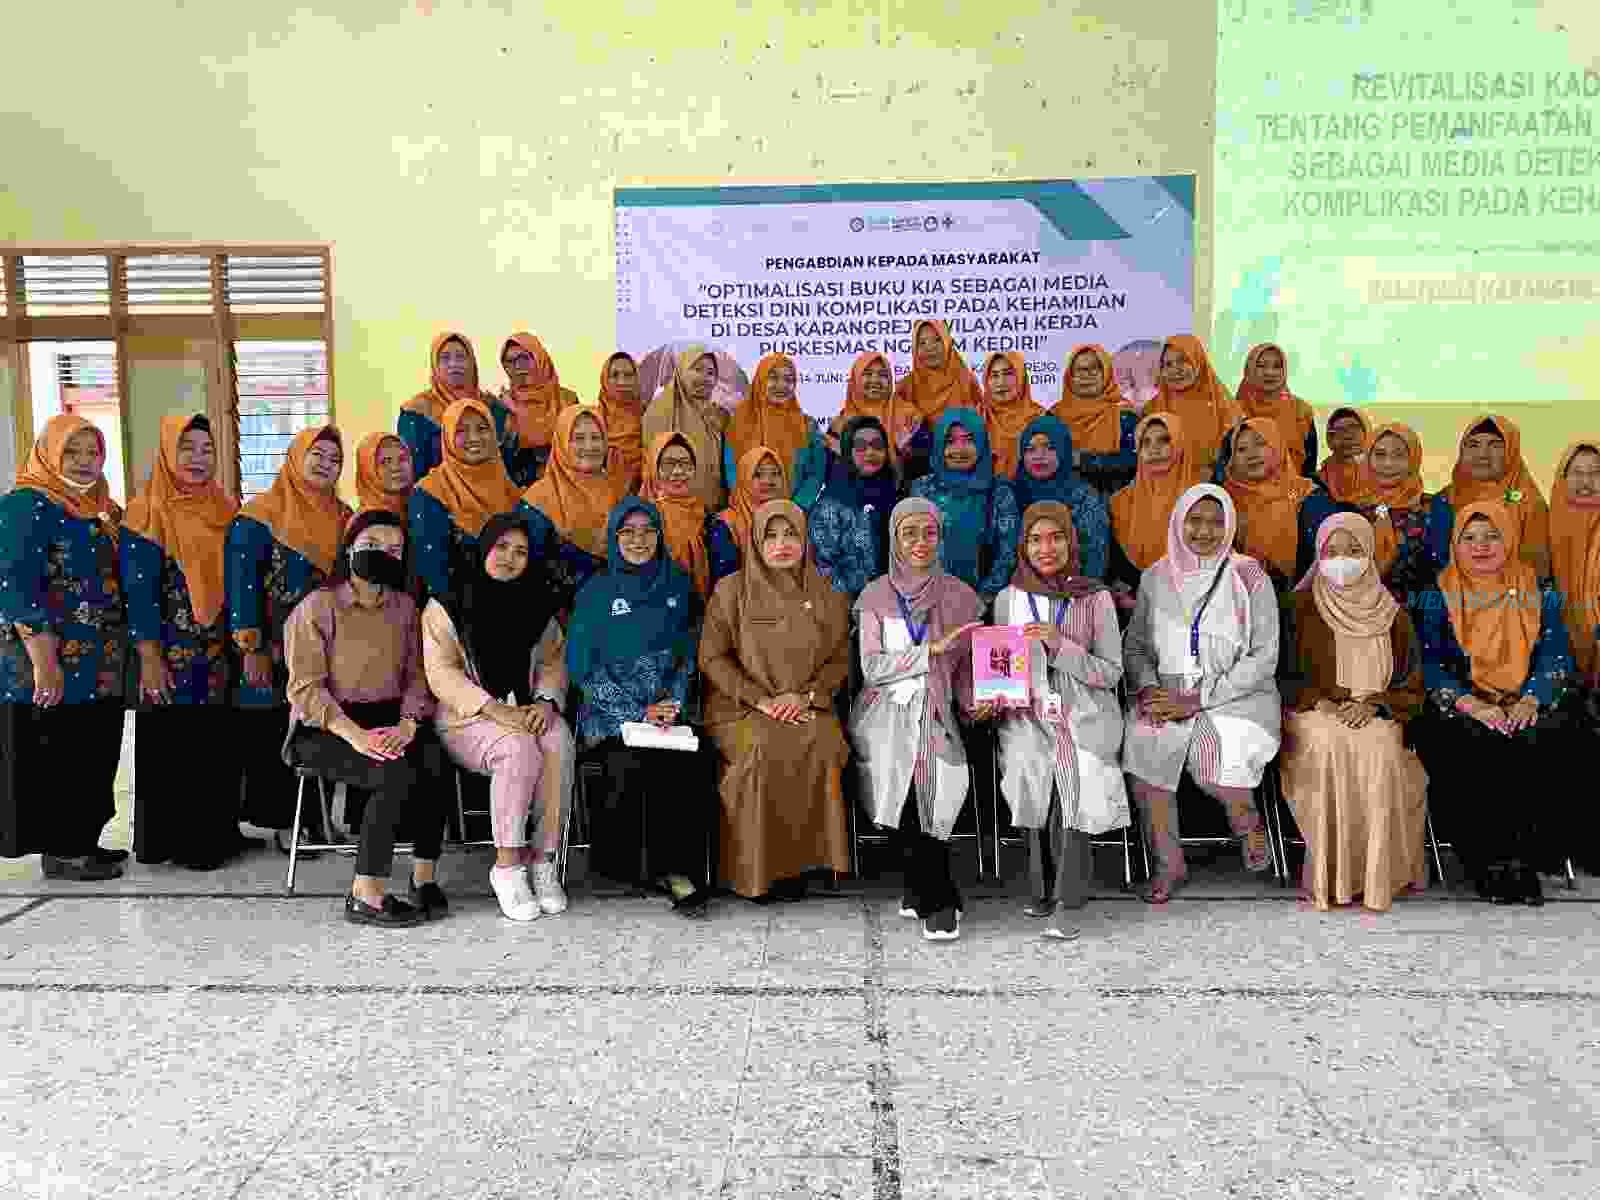 Optimalisasi Buku KIA sebagai Media Deteksi Dini Komplikasi pada Kehamilan di Desa Karangrejo Kabupaten Kediri